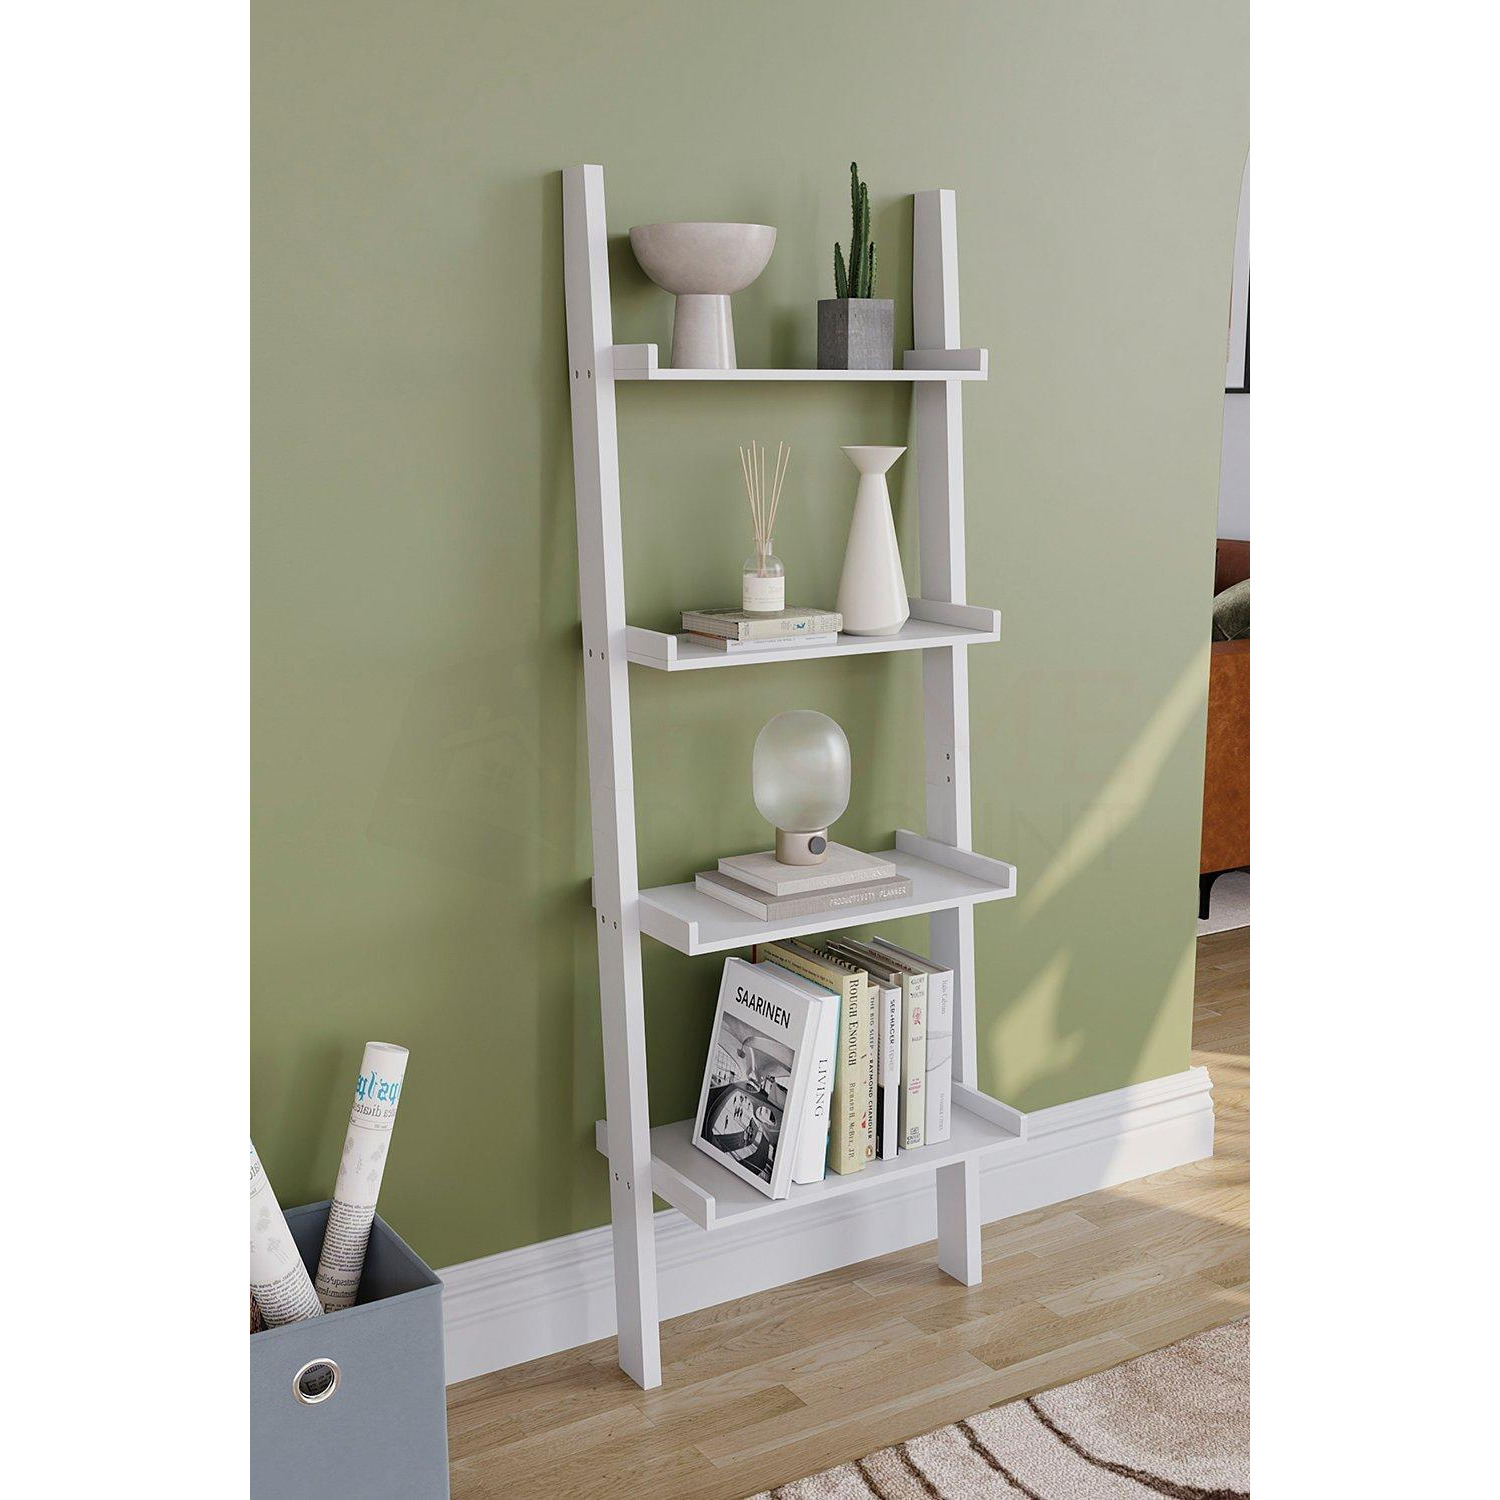 Vida Designs York 4 Tier Ladder Bookcase Storage 1540 x 560 x 290 mm - image 1